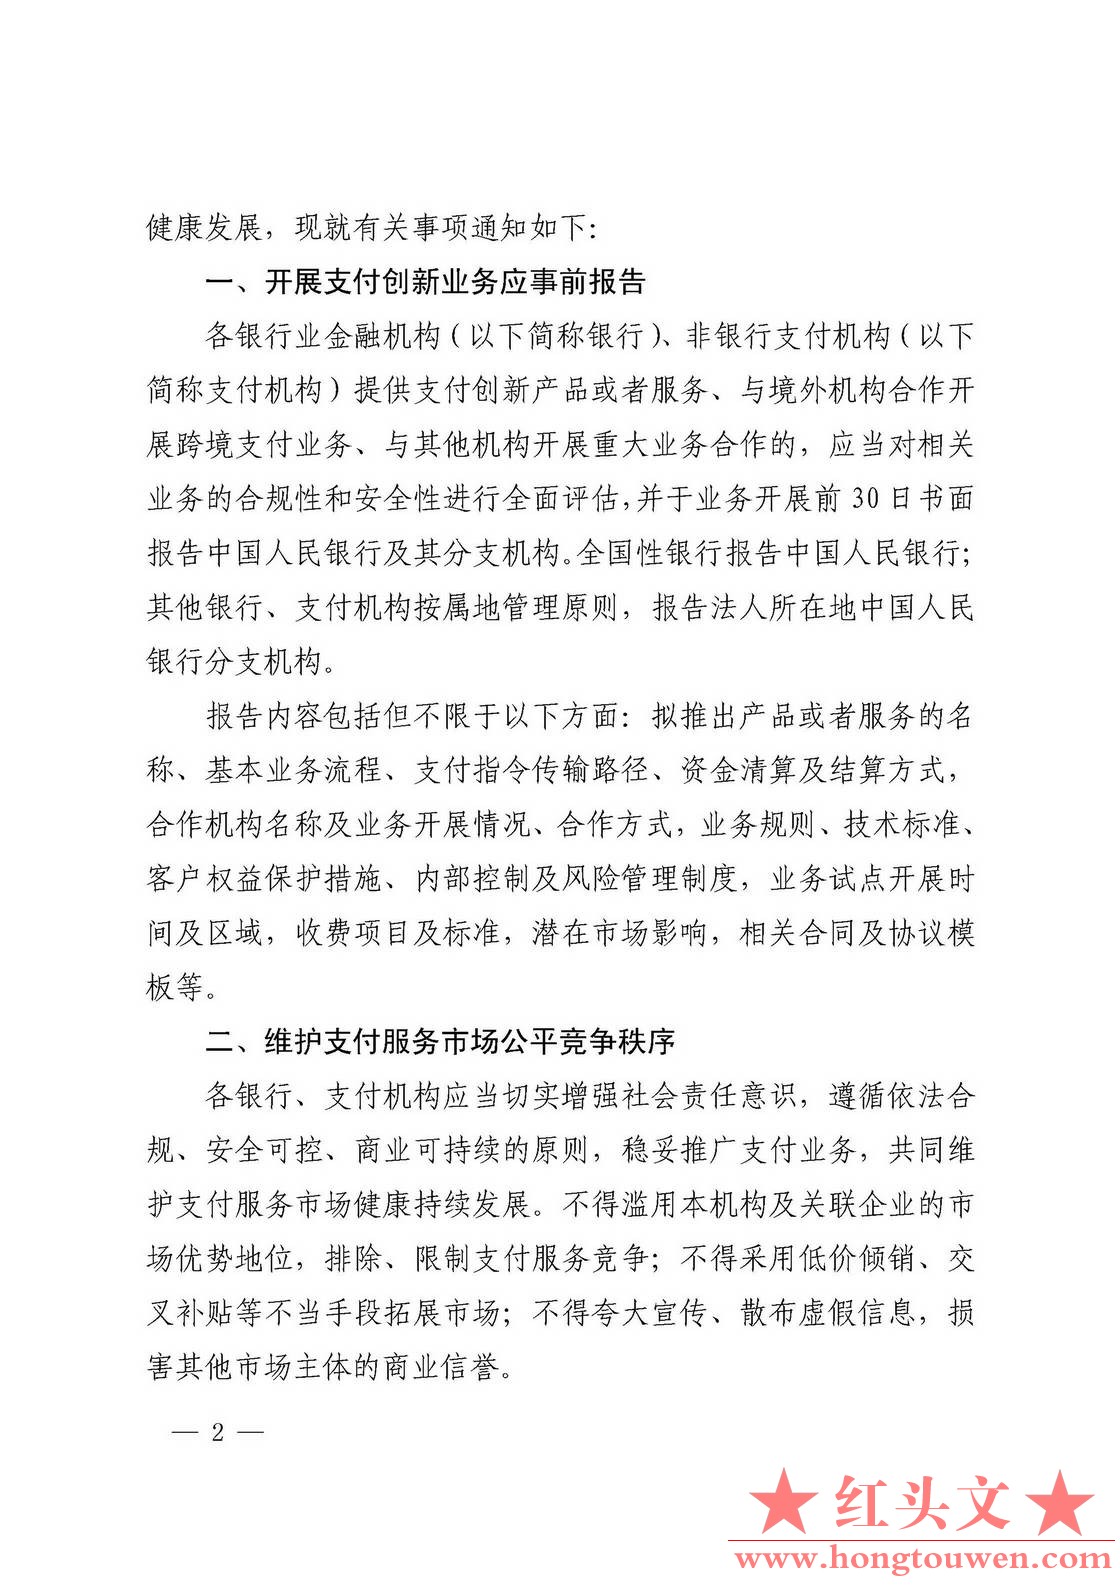 银发[2017]281号-中国人民银行关于规范支付创新业务的通知_页面_2.jpg